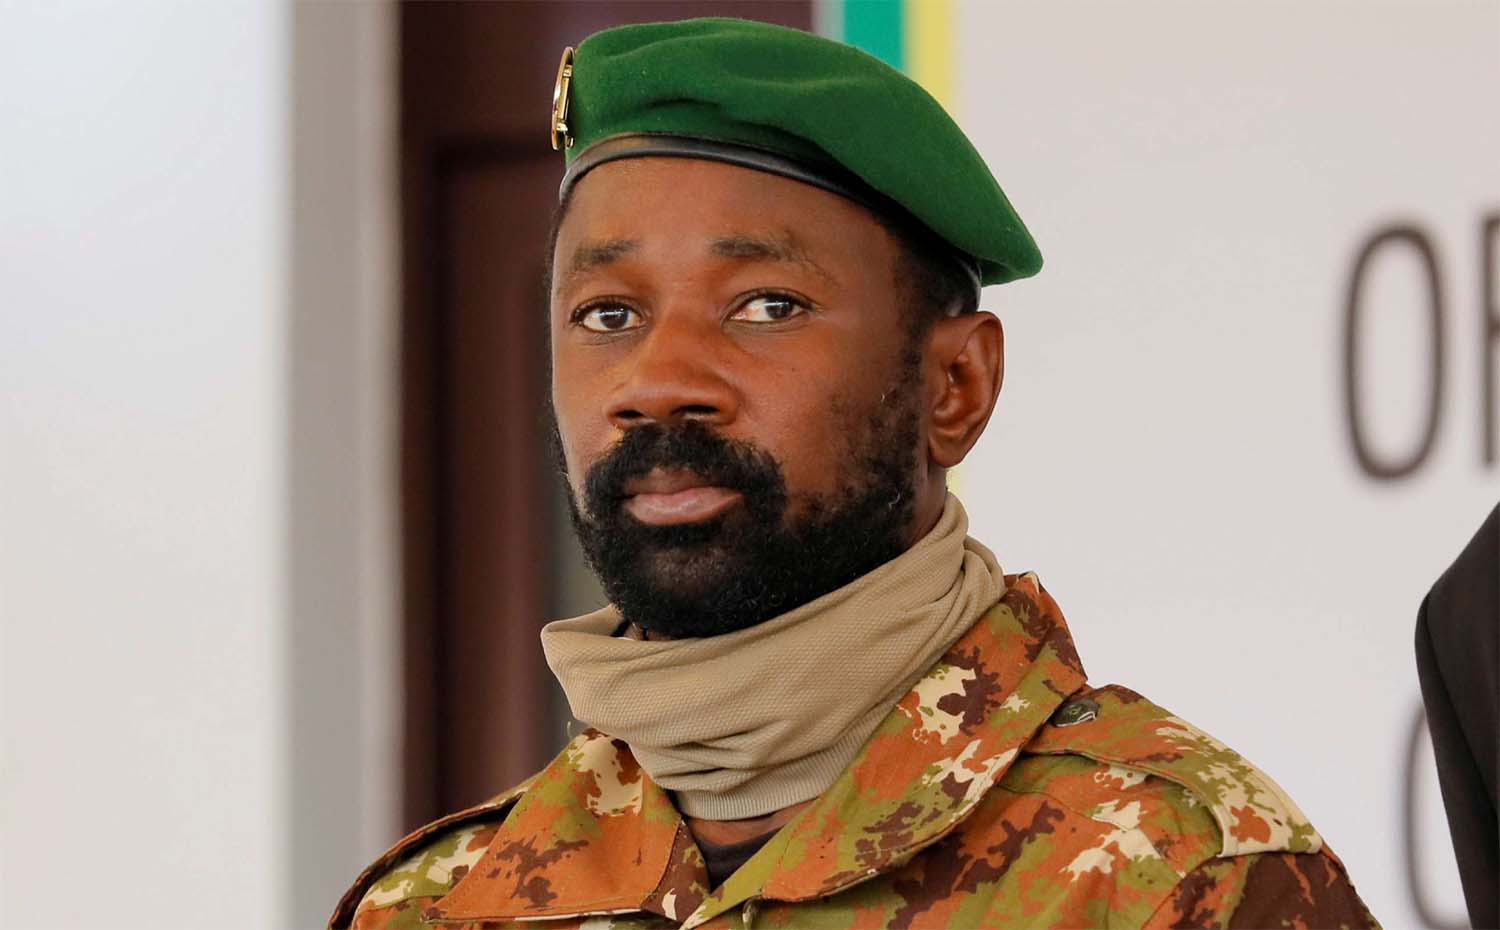 Colonel Assimi Goita, leader of Malian military junta